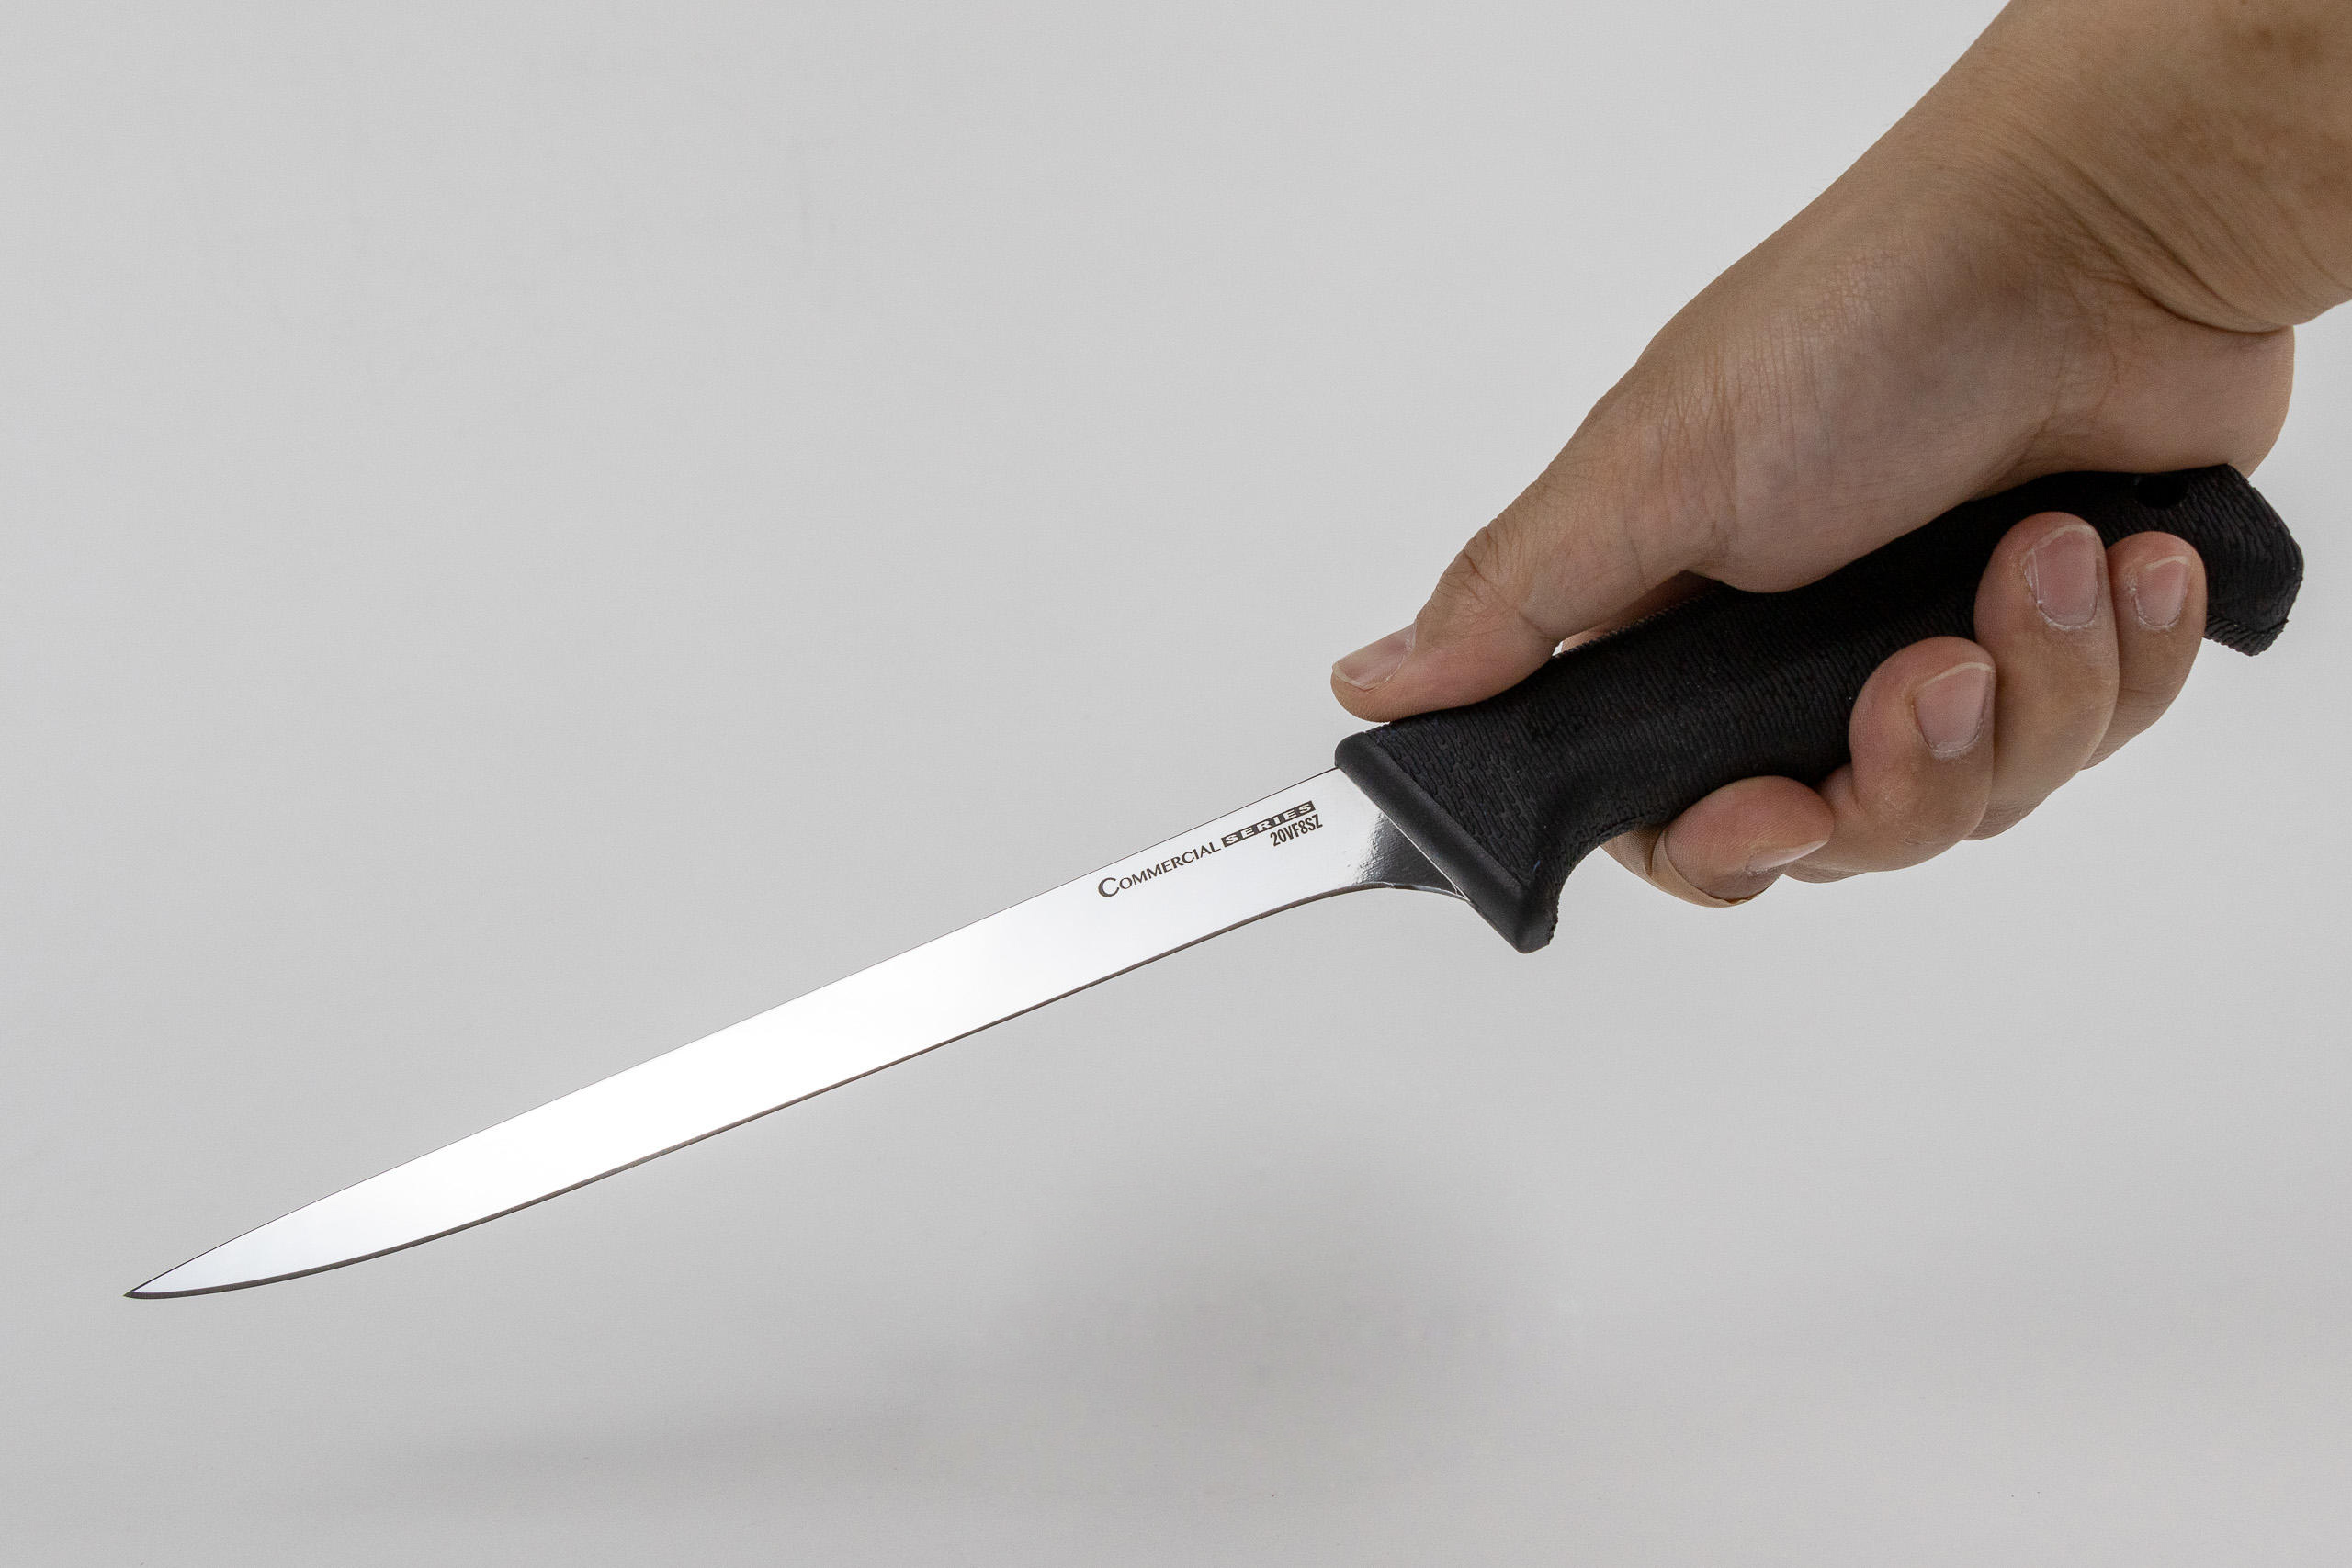 Фото филейного ножа в руке